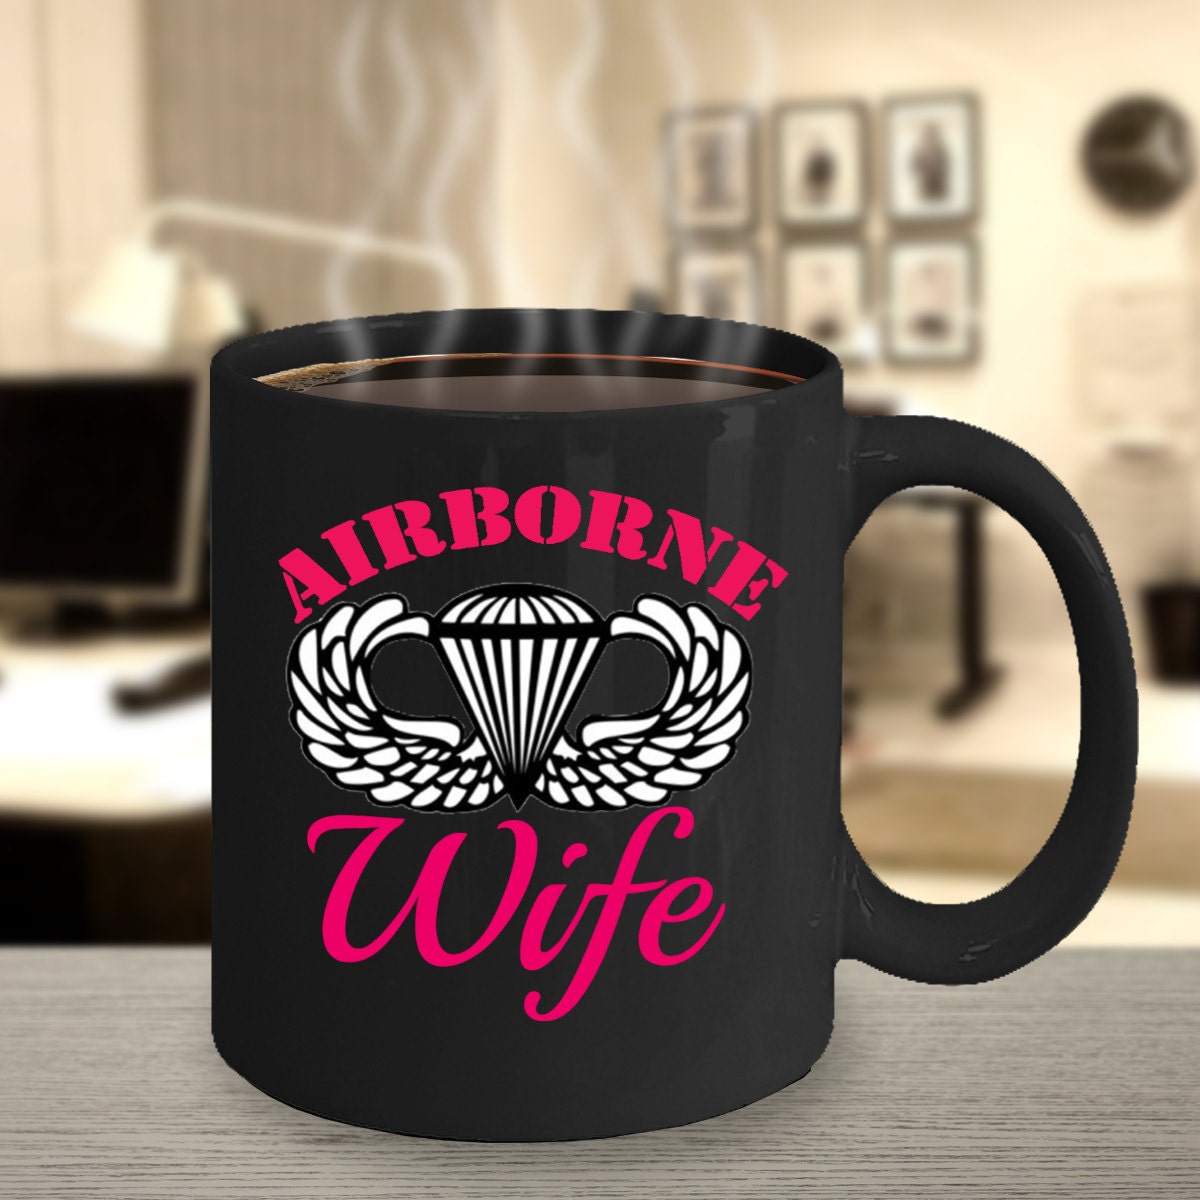 Paratrooper 16 oz. Travel Coffee Mug RTIC